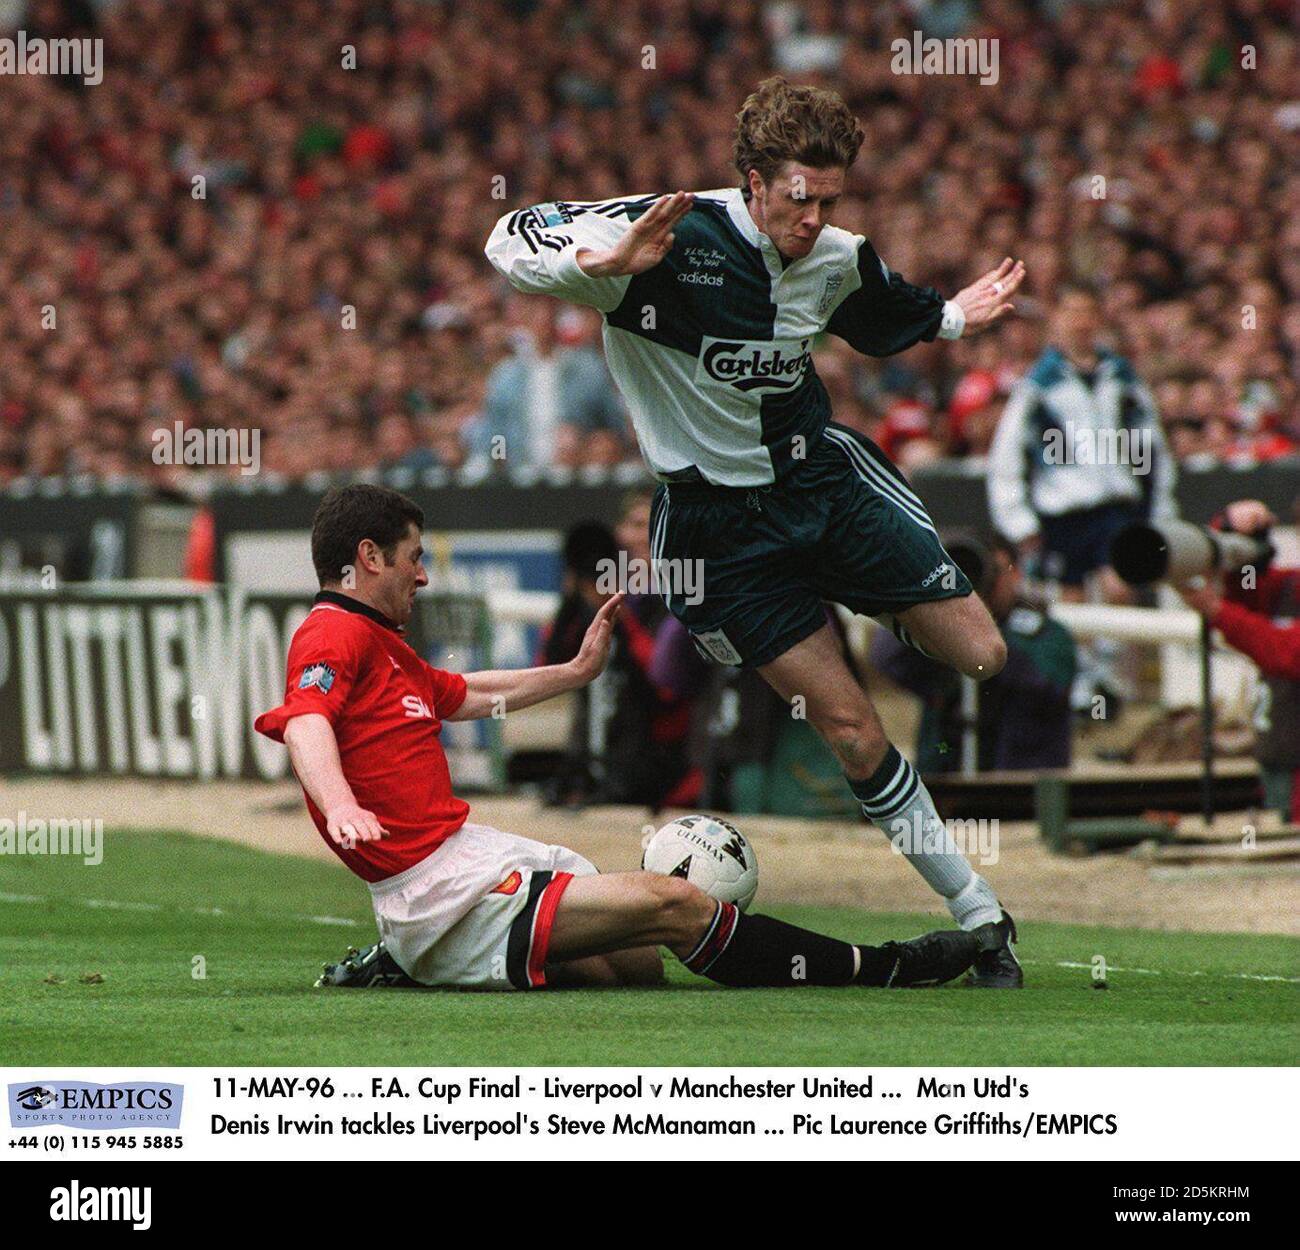 11-MAY-96... F.A. Final de la Copa - Liverpool contra Manchester United ... Denis Irwin, de Manchester United, se enfrenta a Steve McManaman, de Liverpool Foto de stock